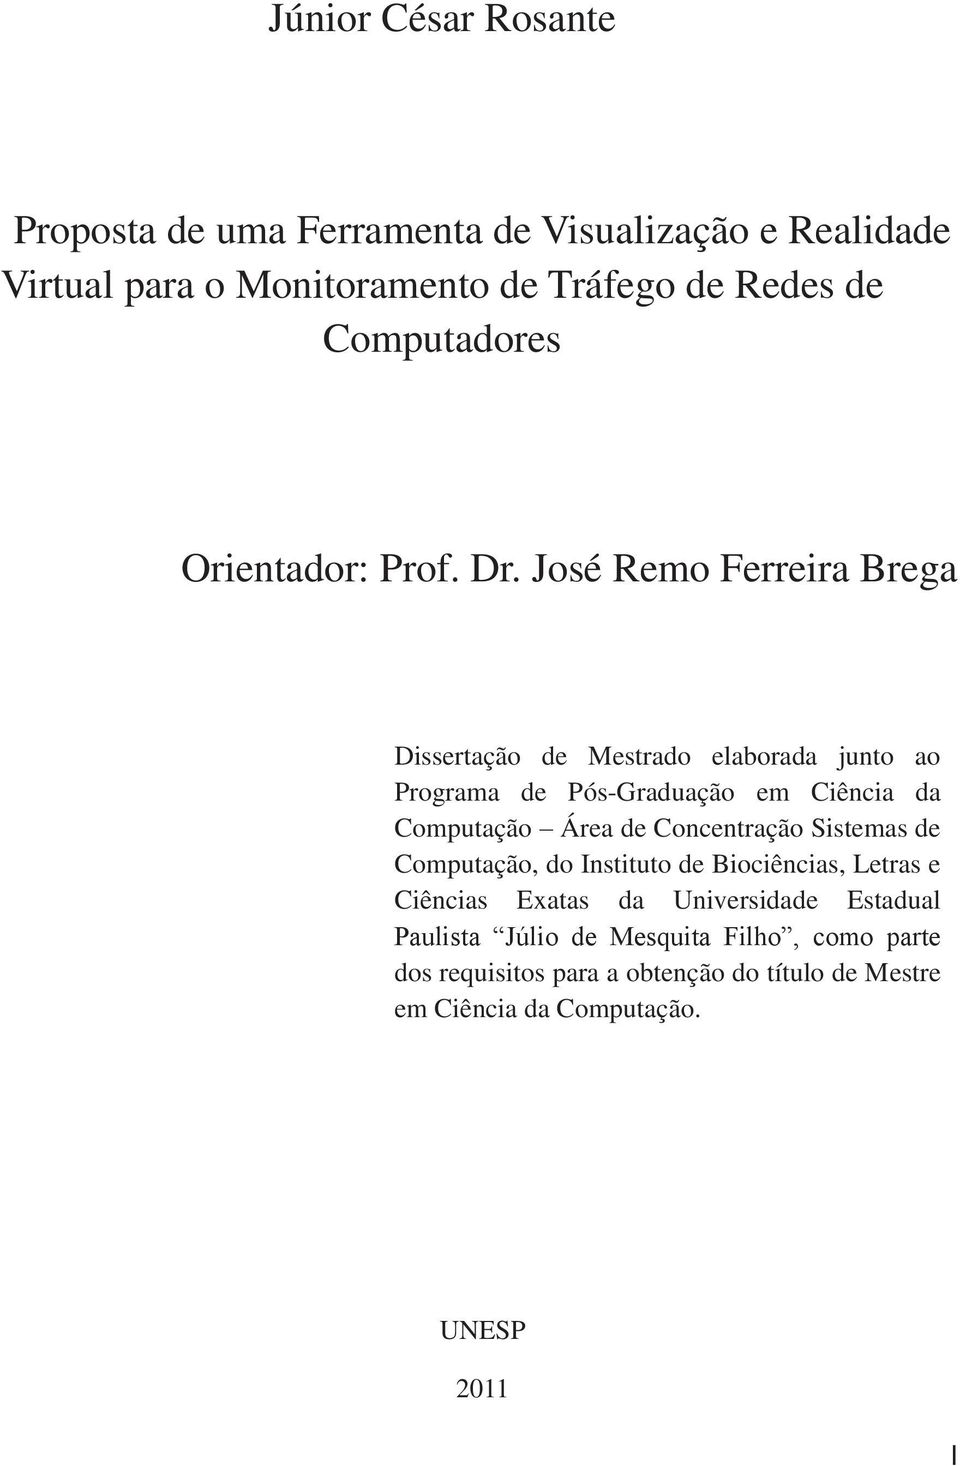 José Remo Ferreira Brega Dissertação de Mestrado elaborada junto ao Programa de Pós-Graduação em Ciência da Computação Área de